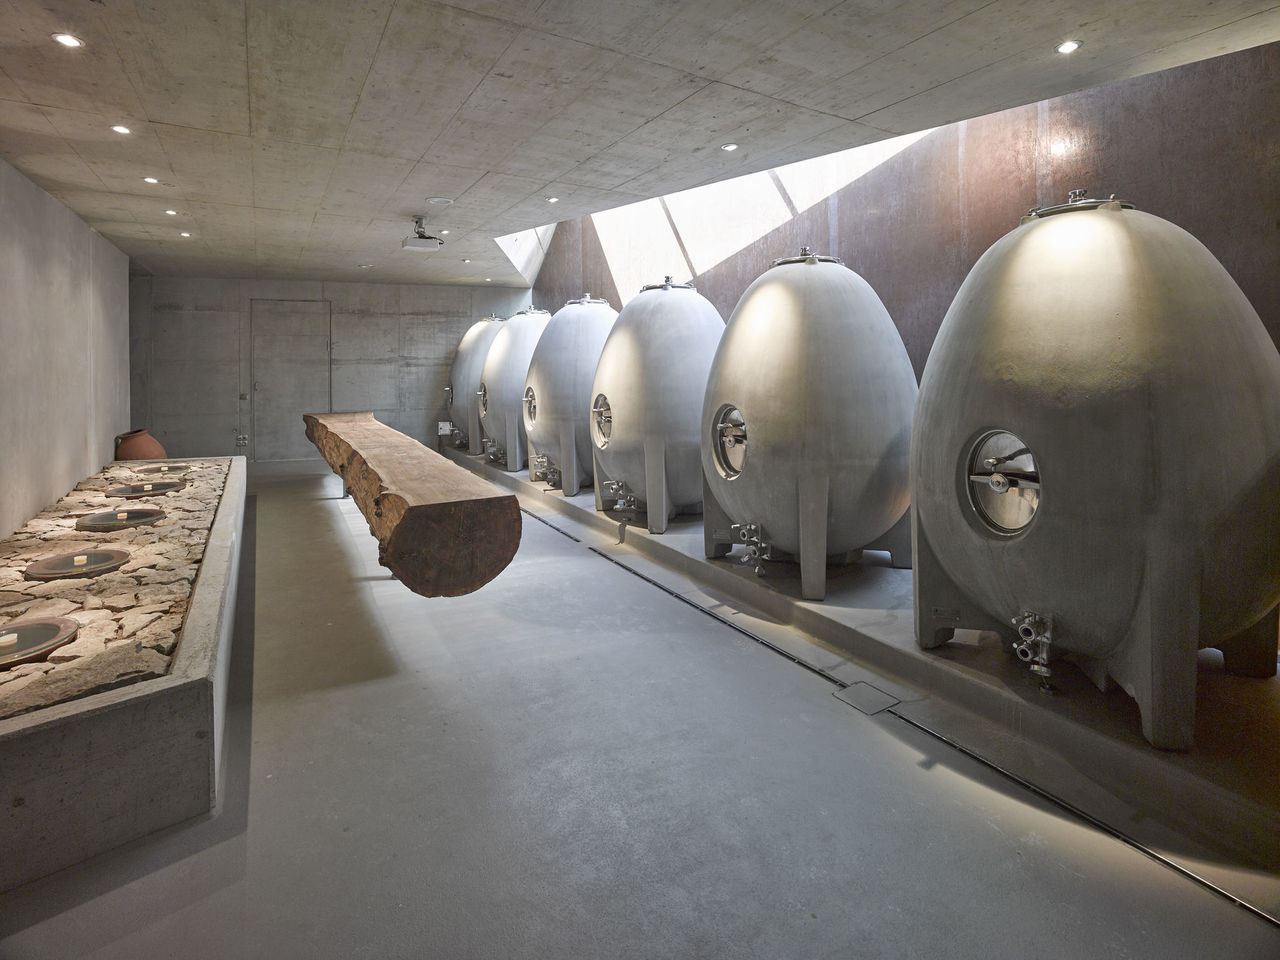 Foto: Steinkeller im Weingut am Stein - nominiert zum Architekturpreis Wein 2016